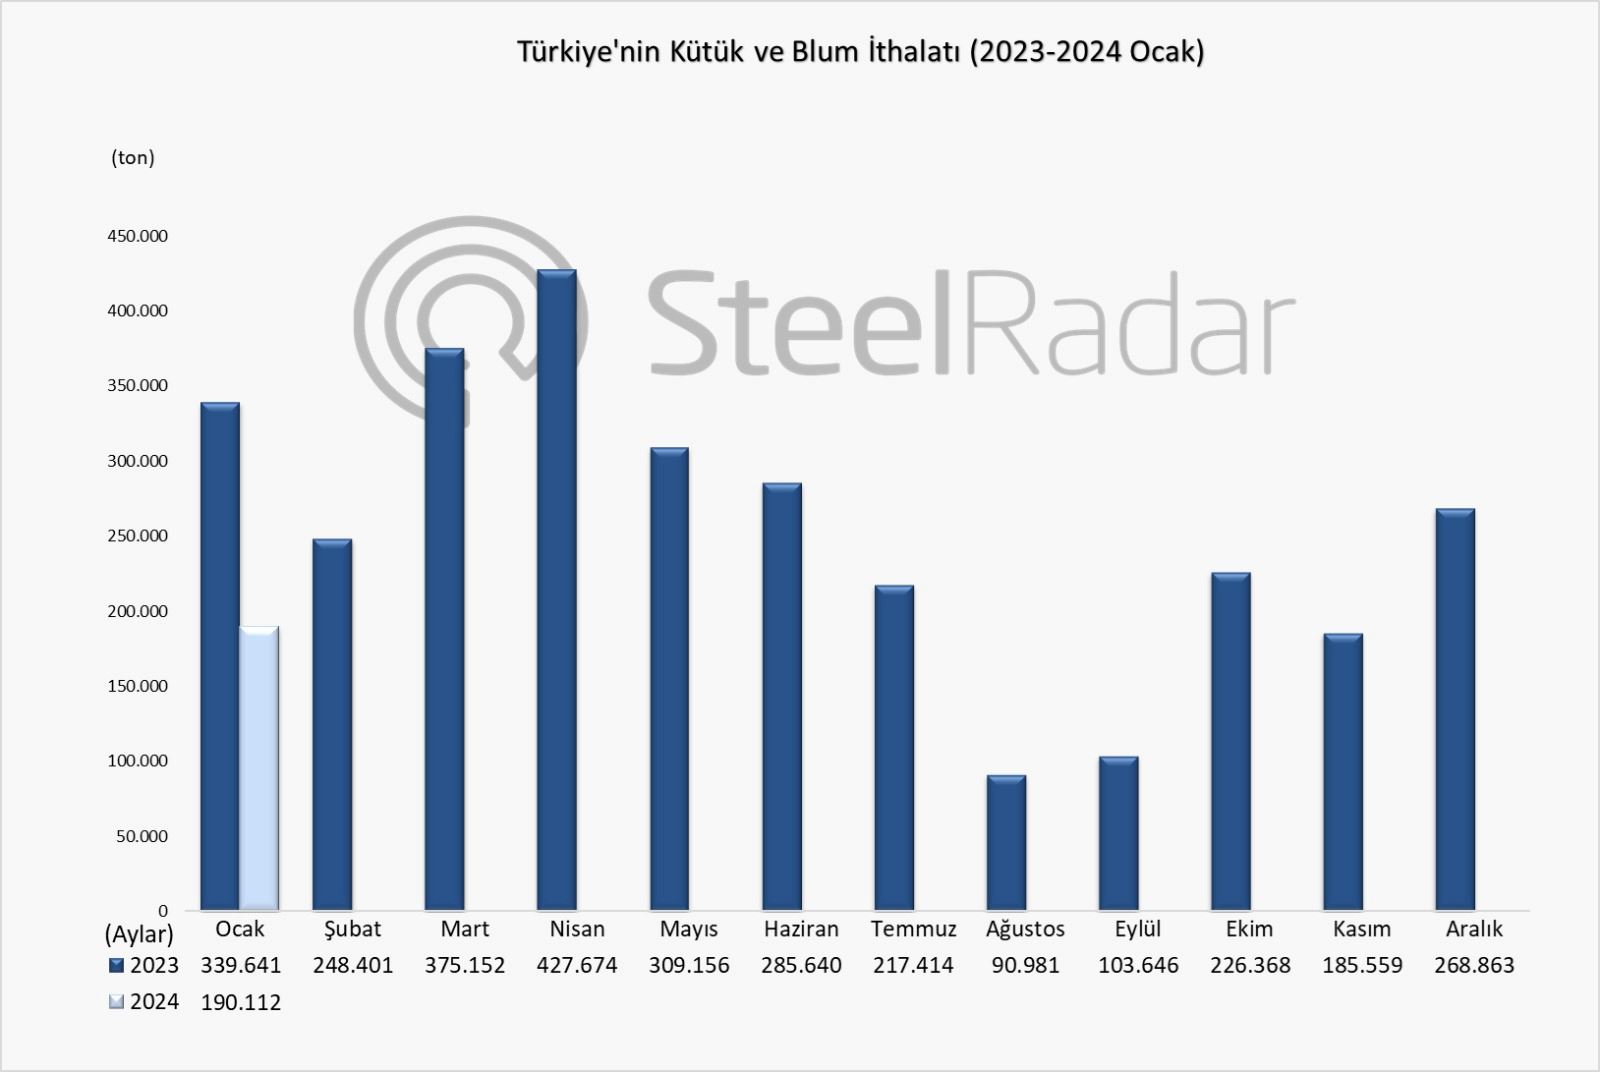 Türkiye'nin ocak ayı kütük ve blum ithalatı önceki yıla göre %44 azaldı